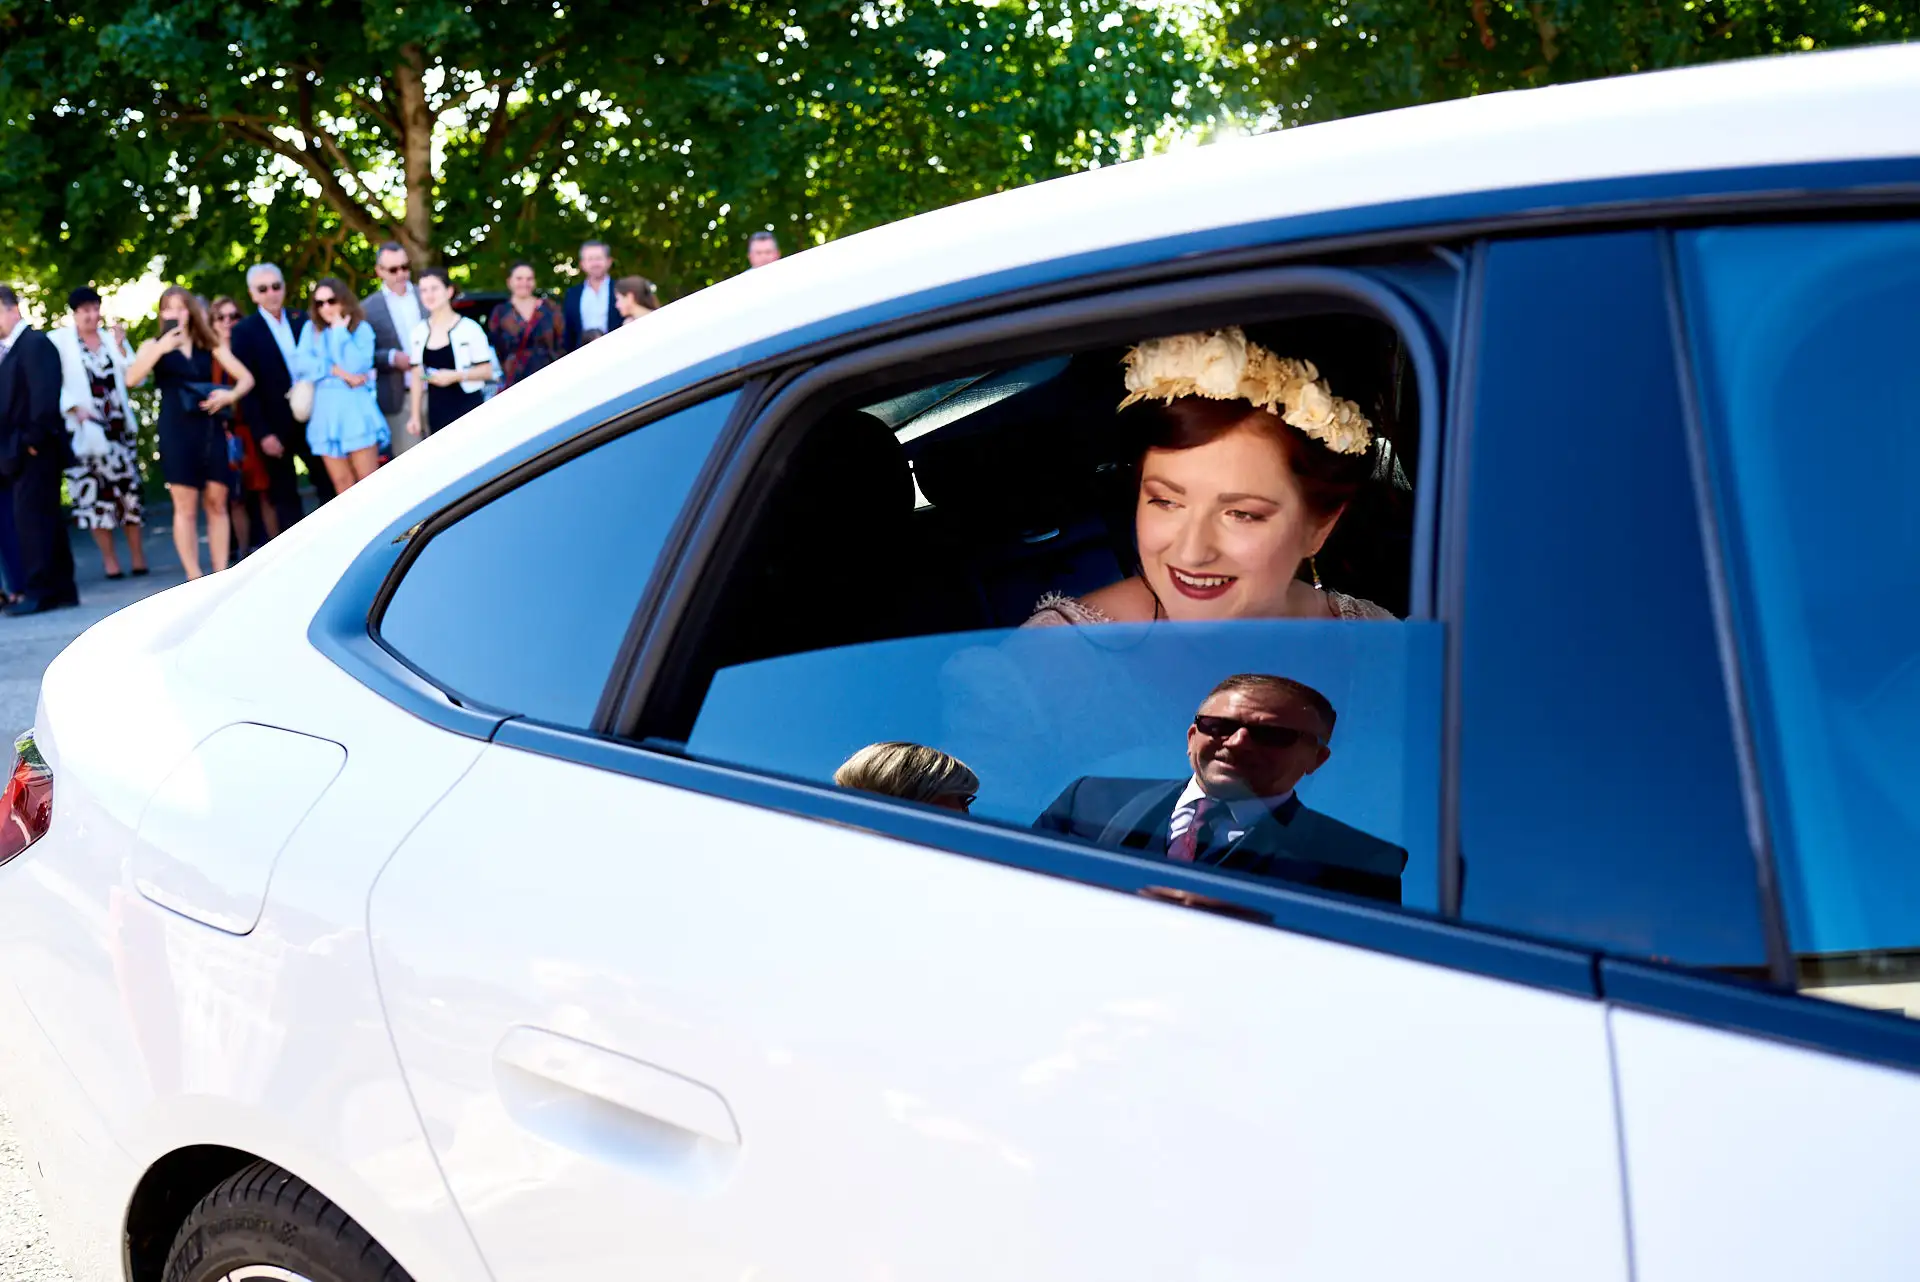 arrivée de la mariée en voiture - reflection du papa sur la vitre